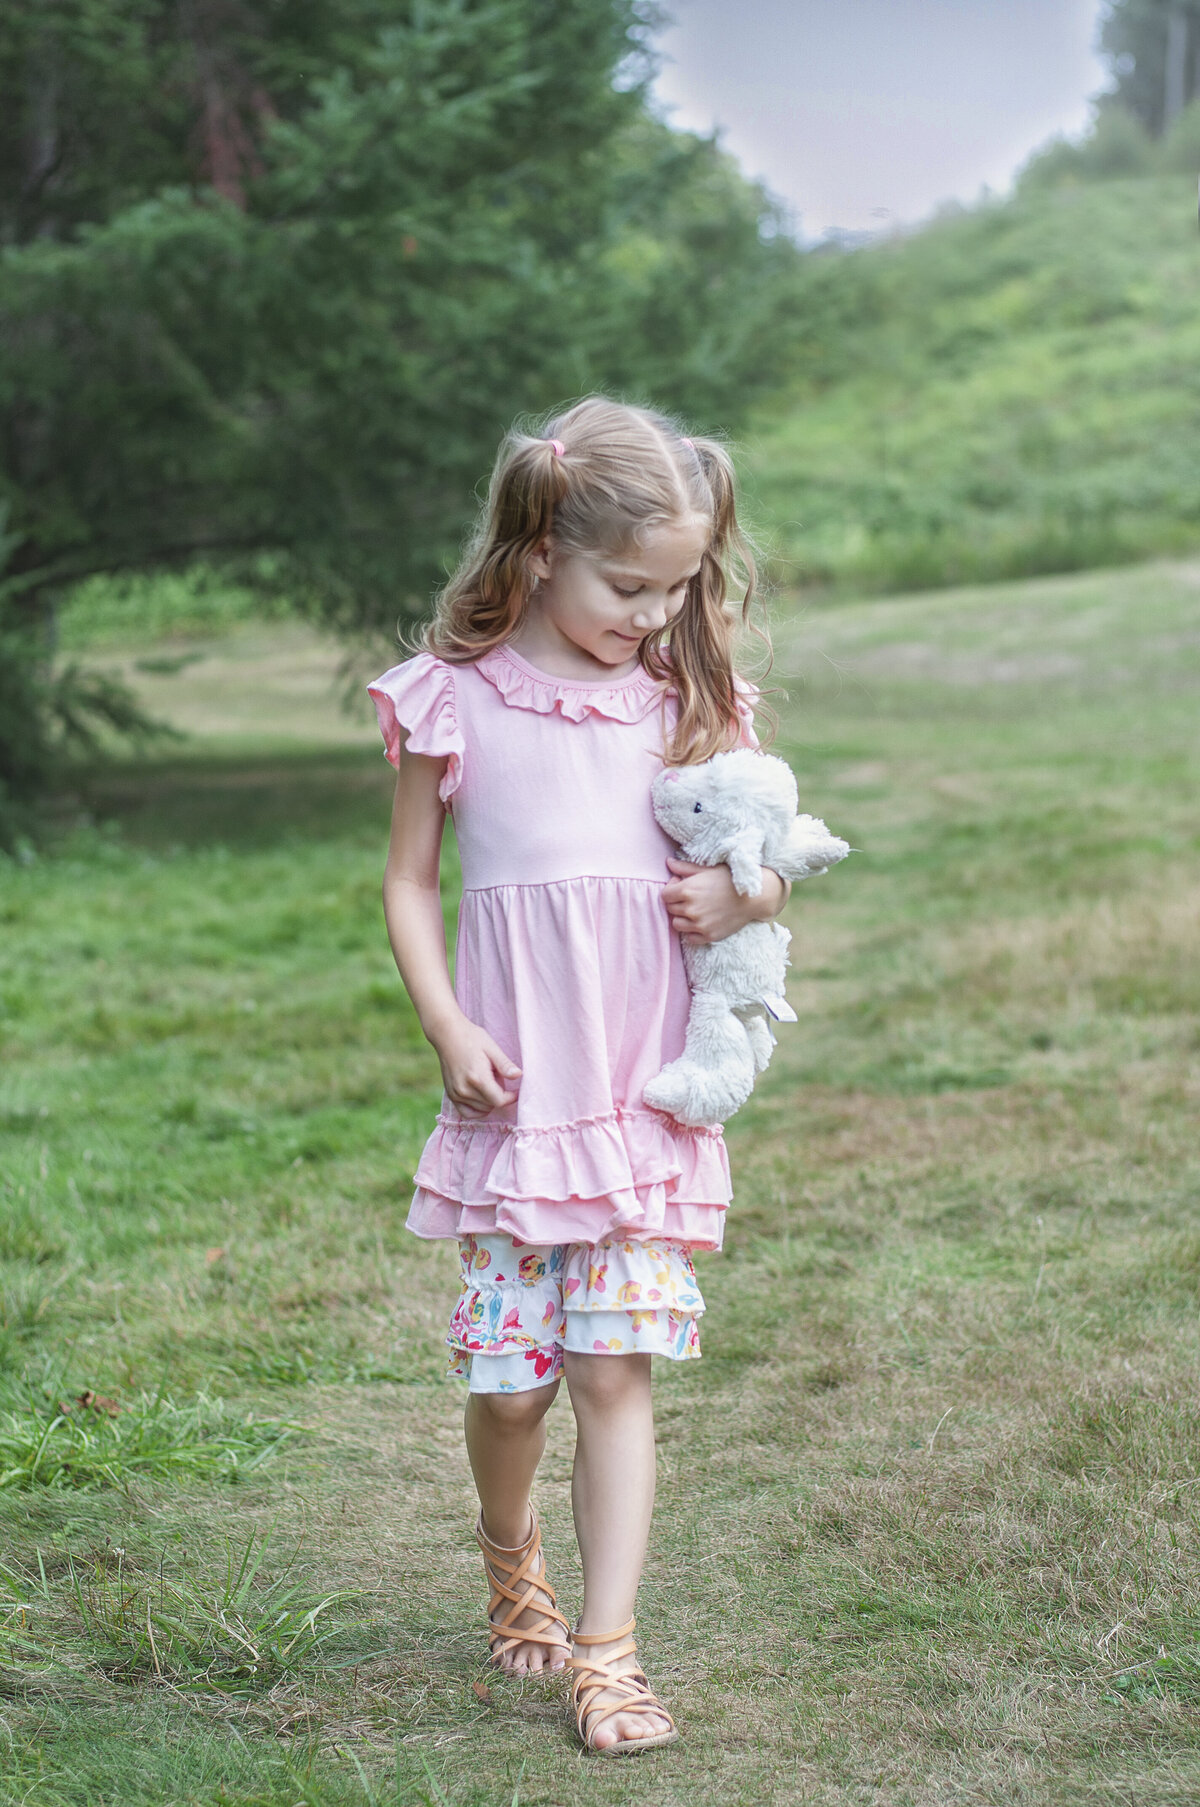 Girl walking with stuffed lamb